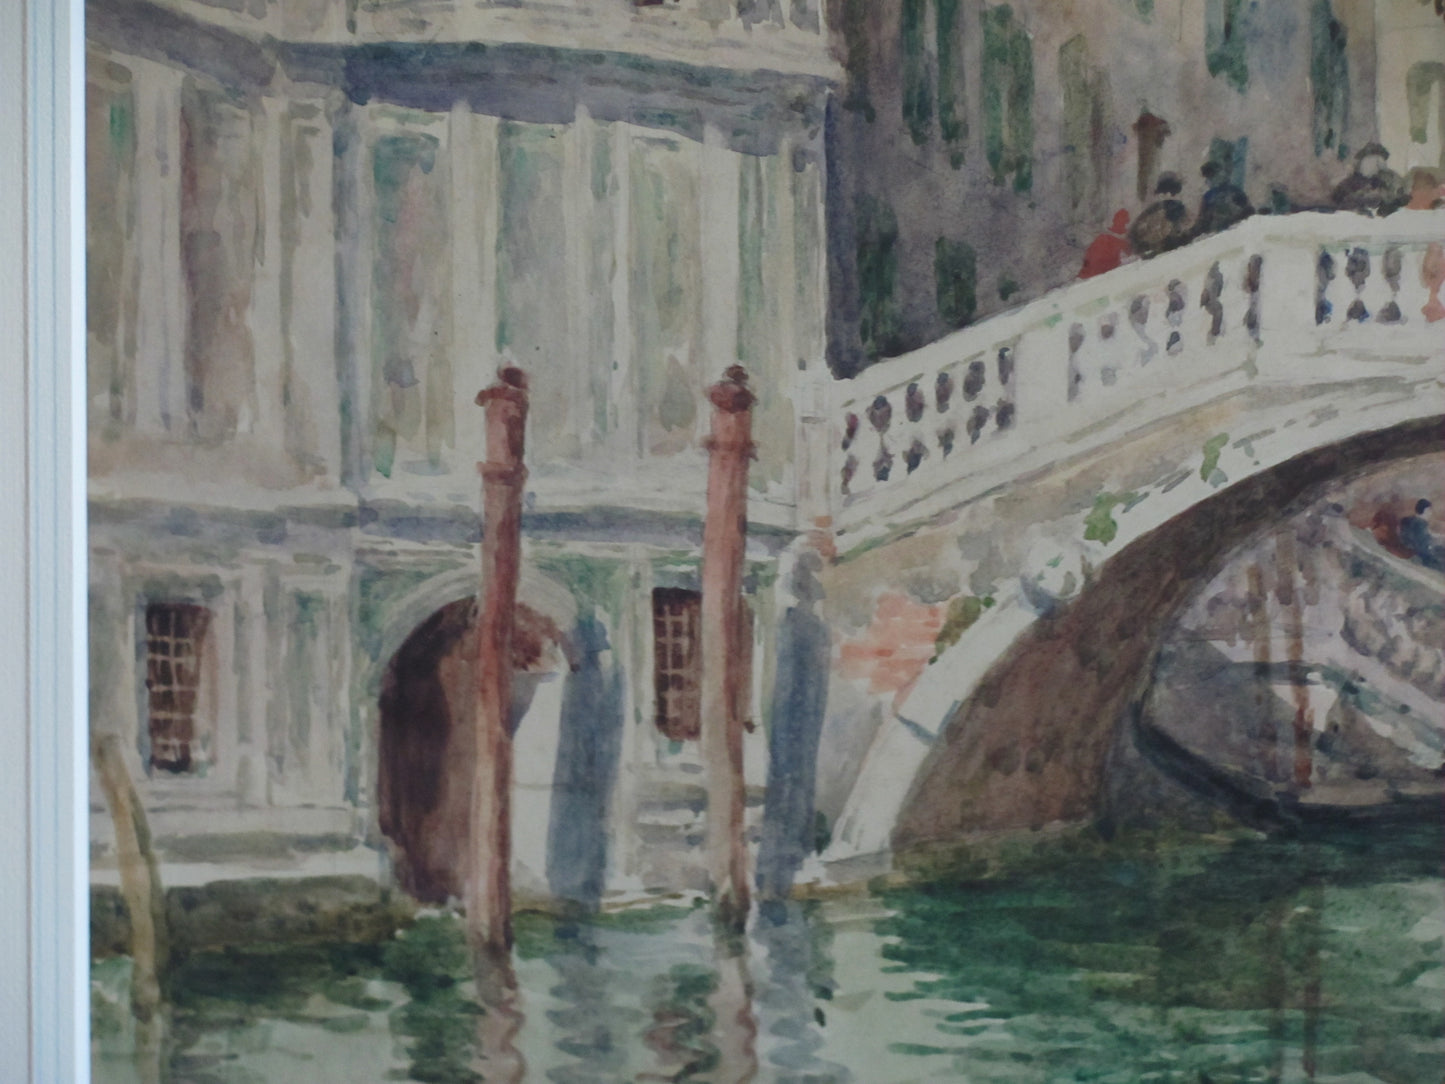 Venice Canal, watercolour, Helen Donald-Smith